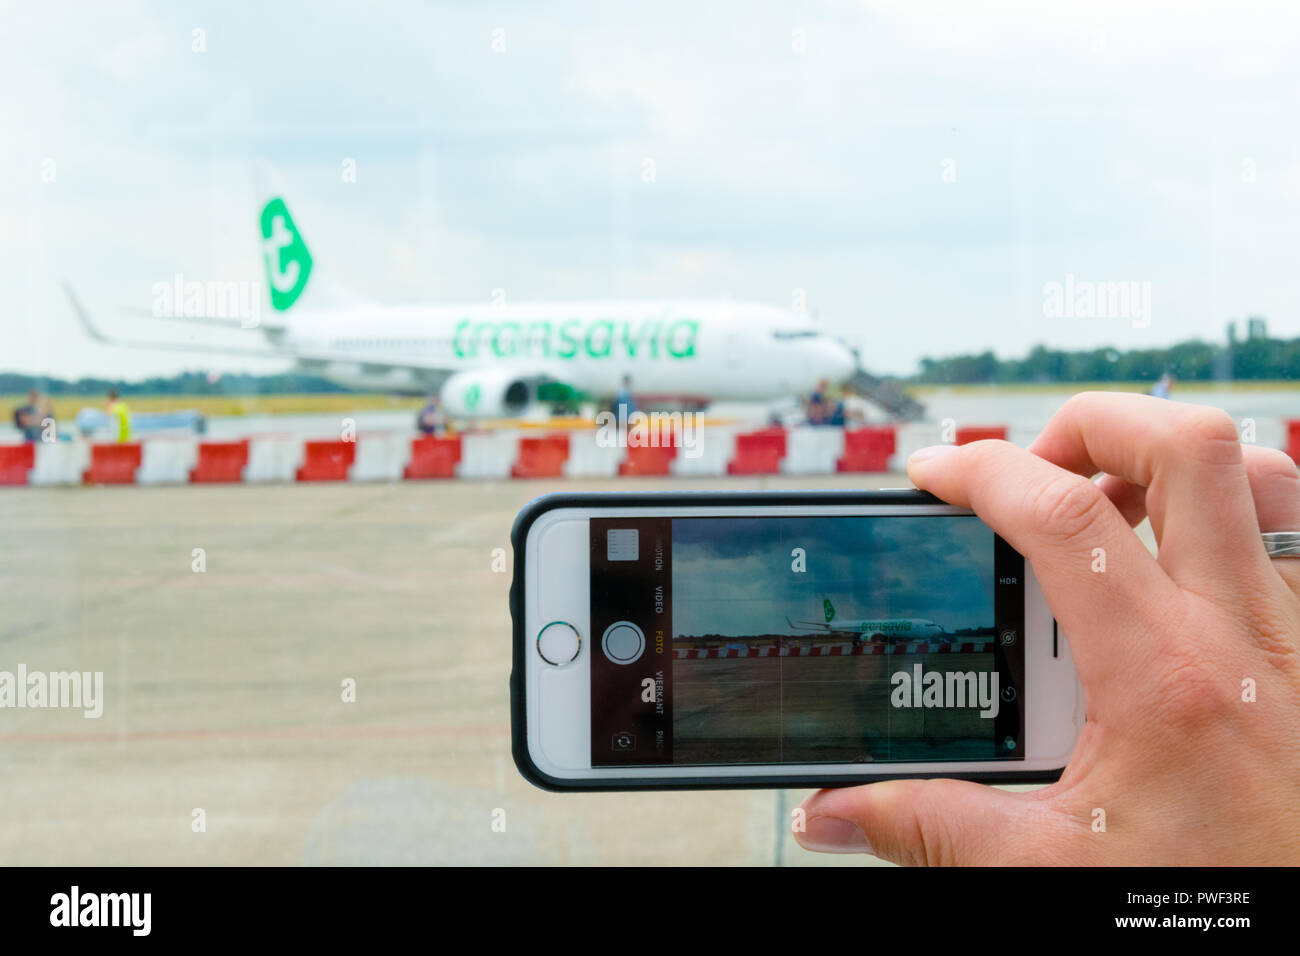 Groningen Eelde Aeropuerto, Holanda, 15 de agosto de 2018: Vista de un hombre de manos haciendo foto en el teléfono móvil de Transavia boeing 737-800 en el aeropuerto Foto de stock